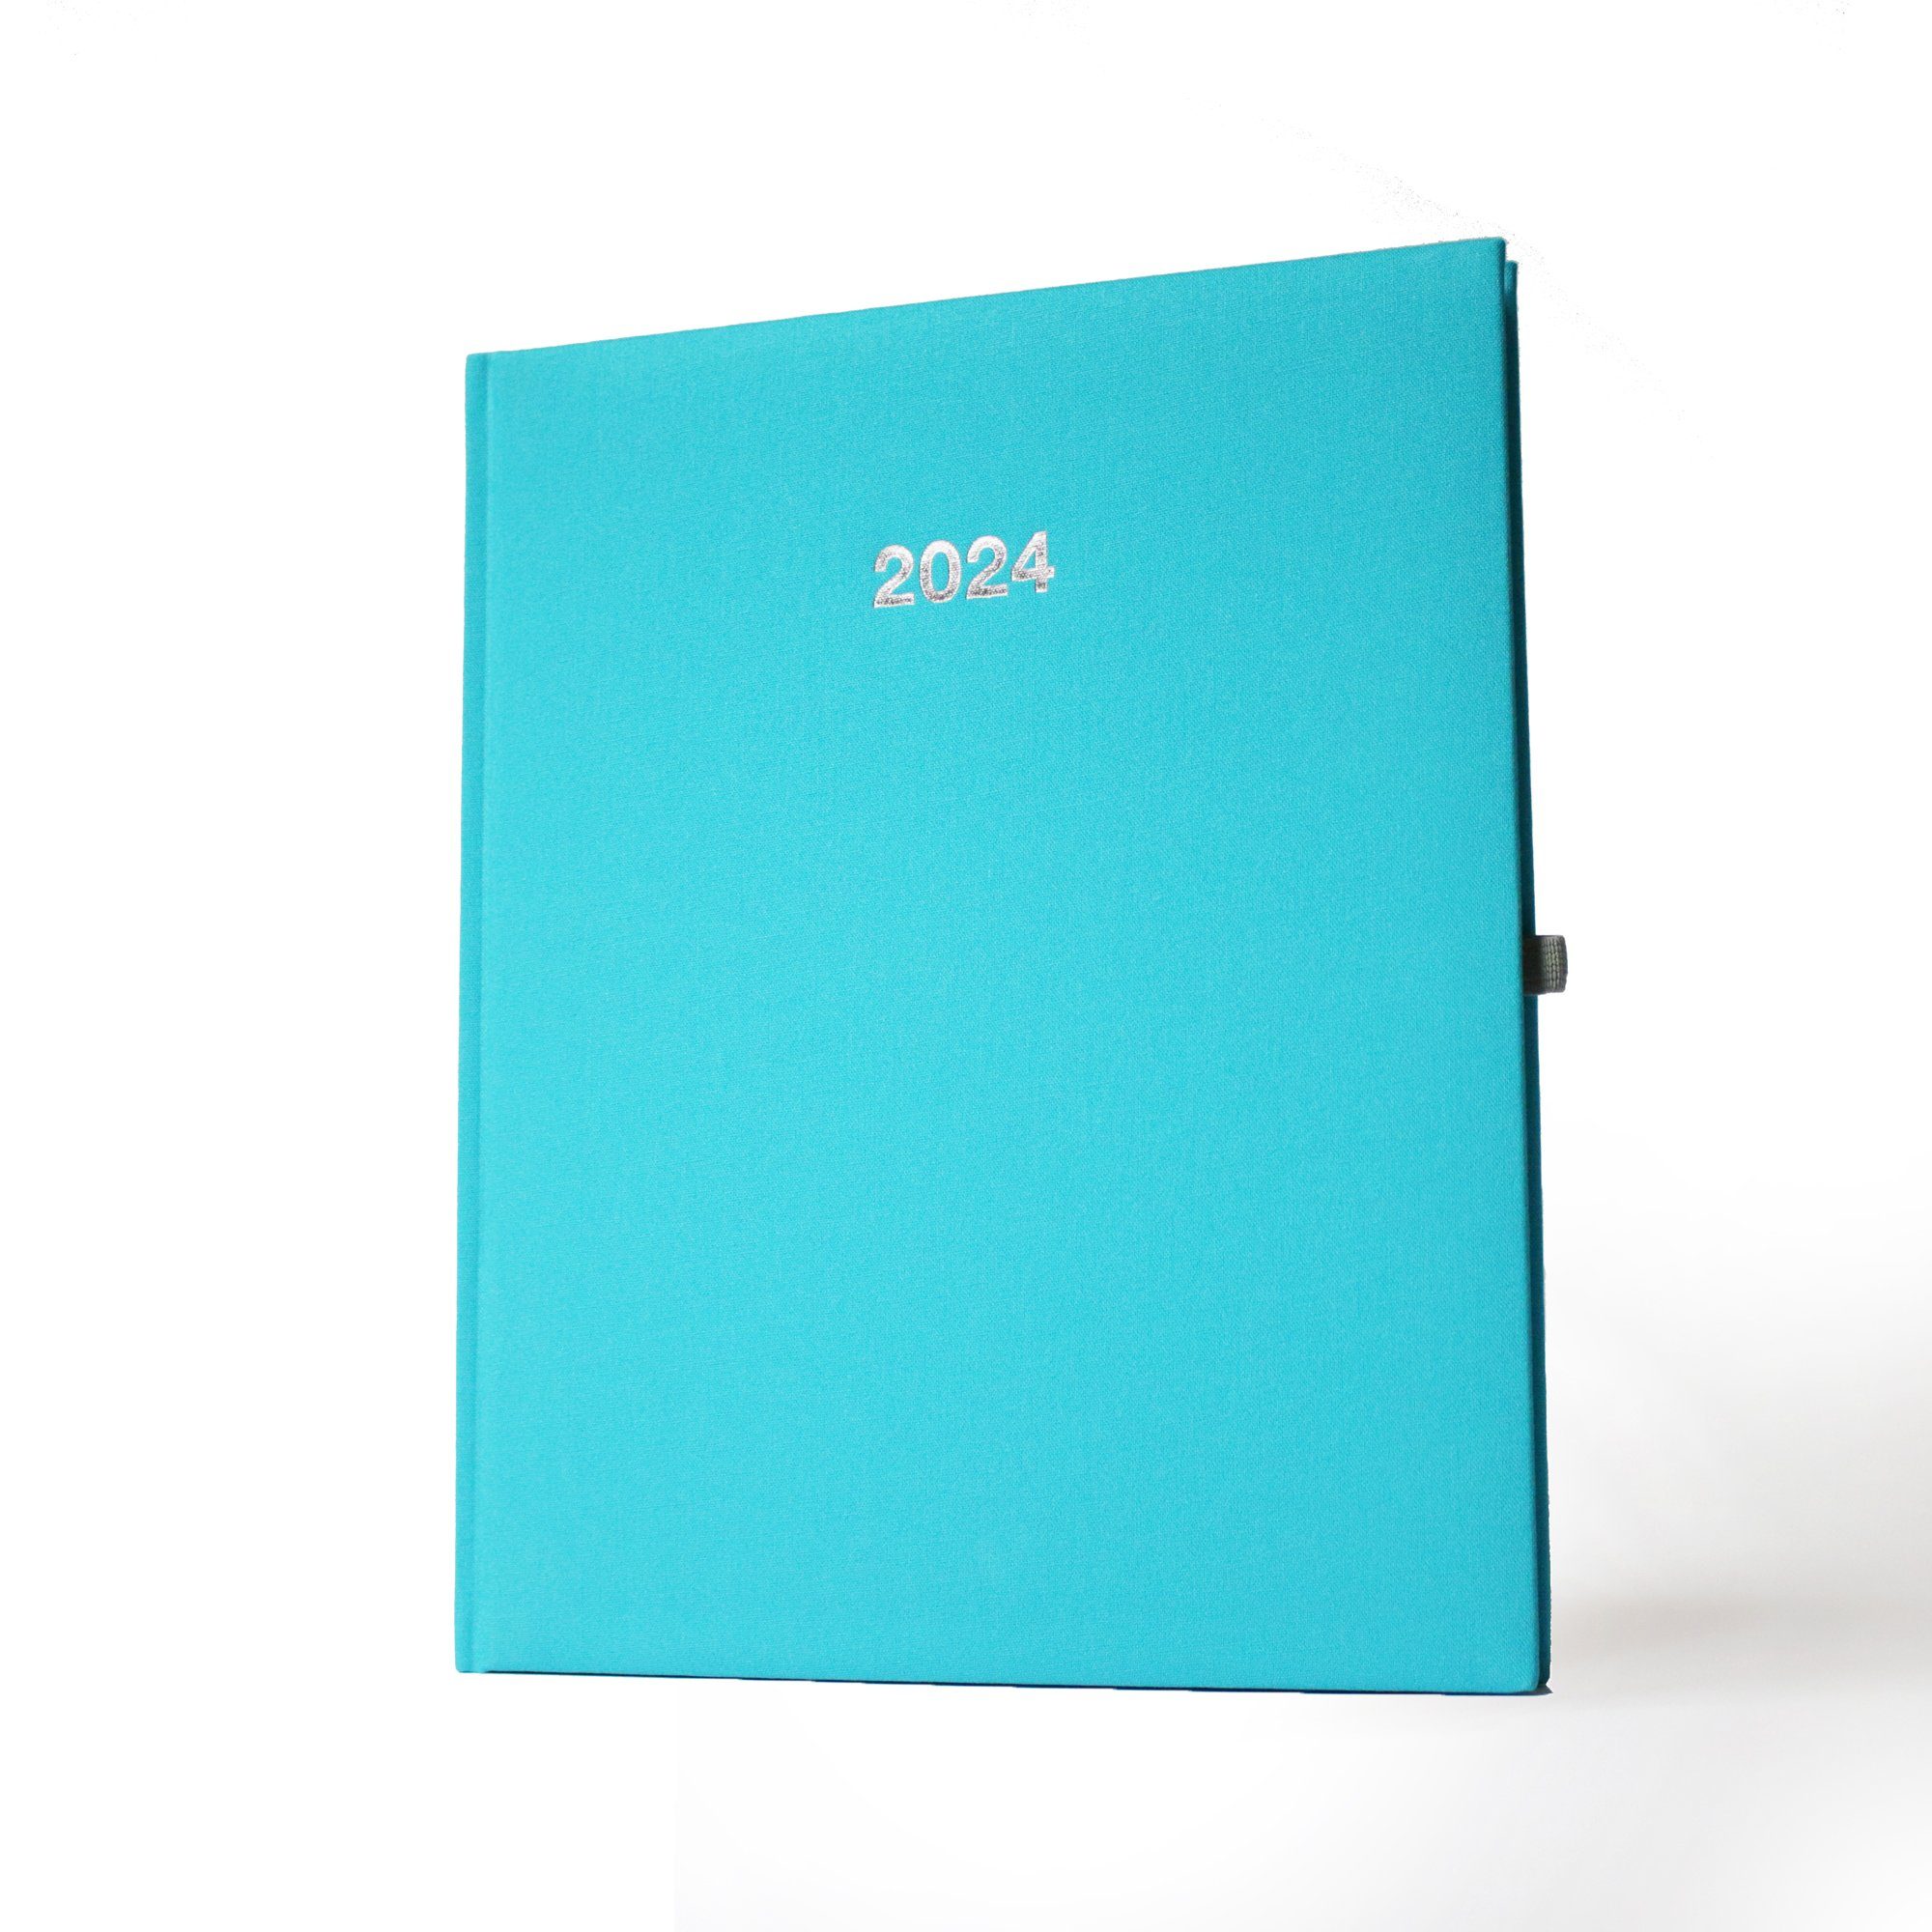 ADINA Buchkalender 2024 ADINA Buchkalender A5+ türkis 21x26cm 1 Woche auf 2 Seiten